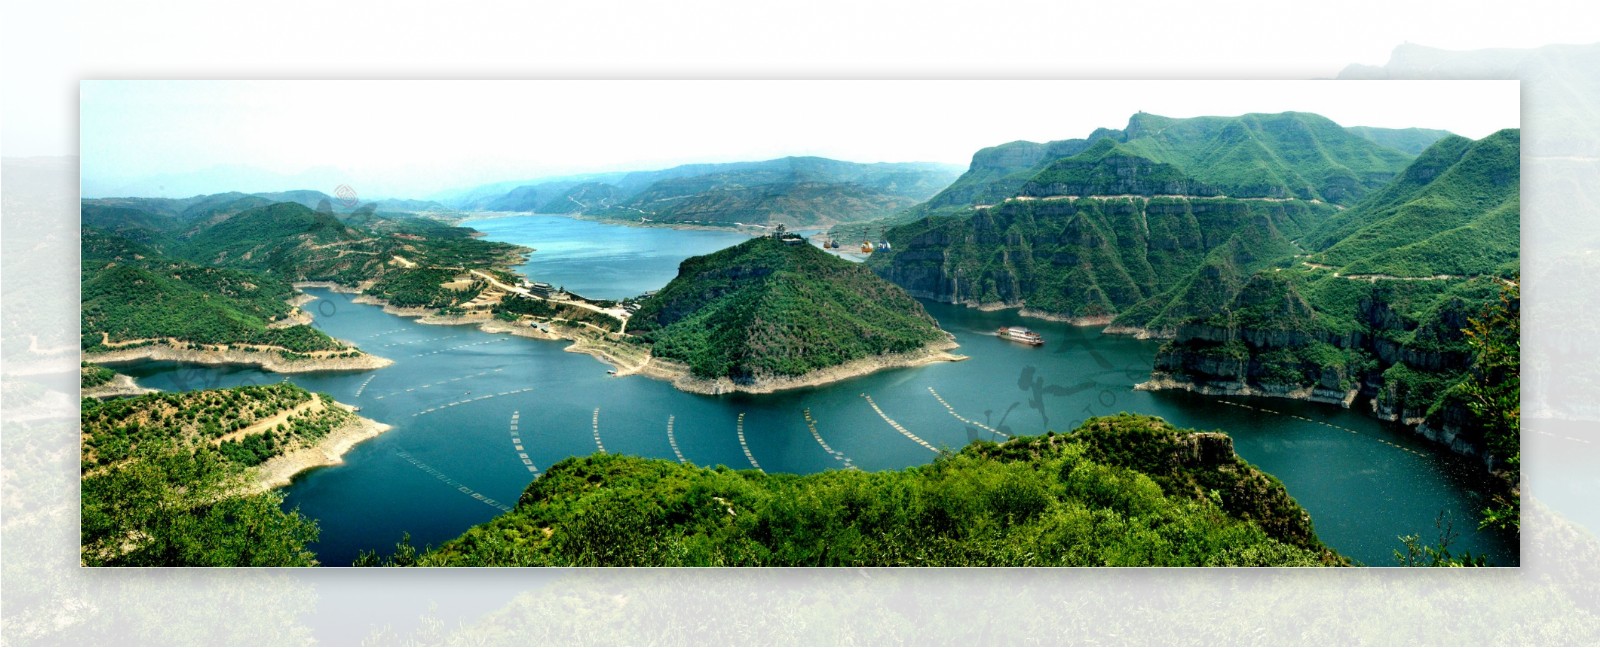 黄河三峡图片